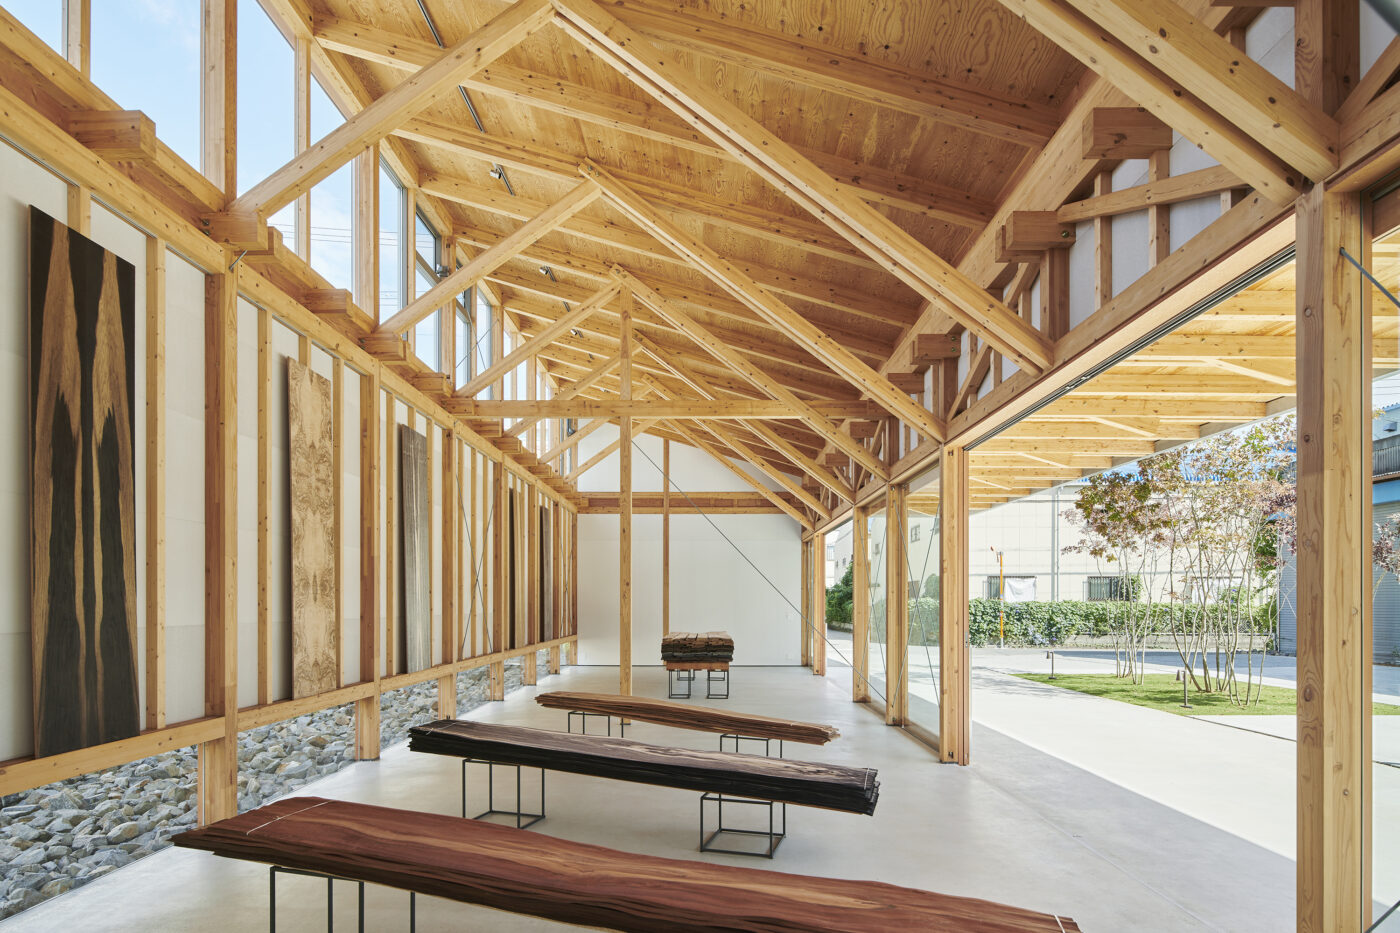 大阪府建築士会「第64回大阪建築コンクール」入賞作品に今津康夫（ninkipen!）の「突板のギャラリー」、ほか関西を拠点とする建築事務所による3作品が受賞。